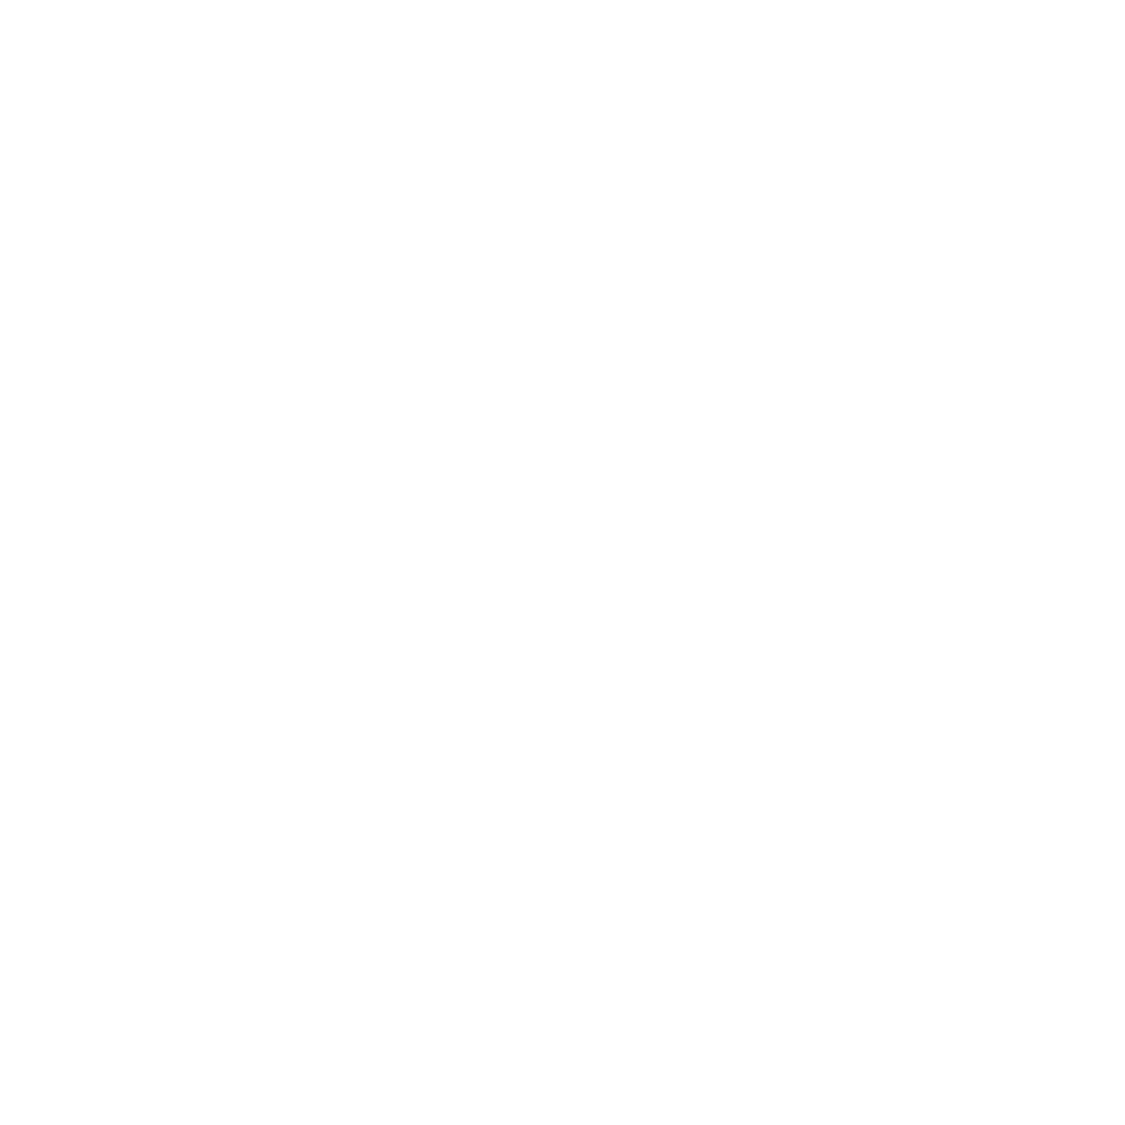 BG advisors